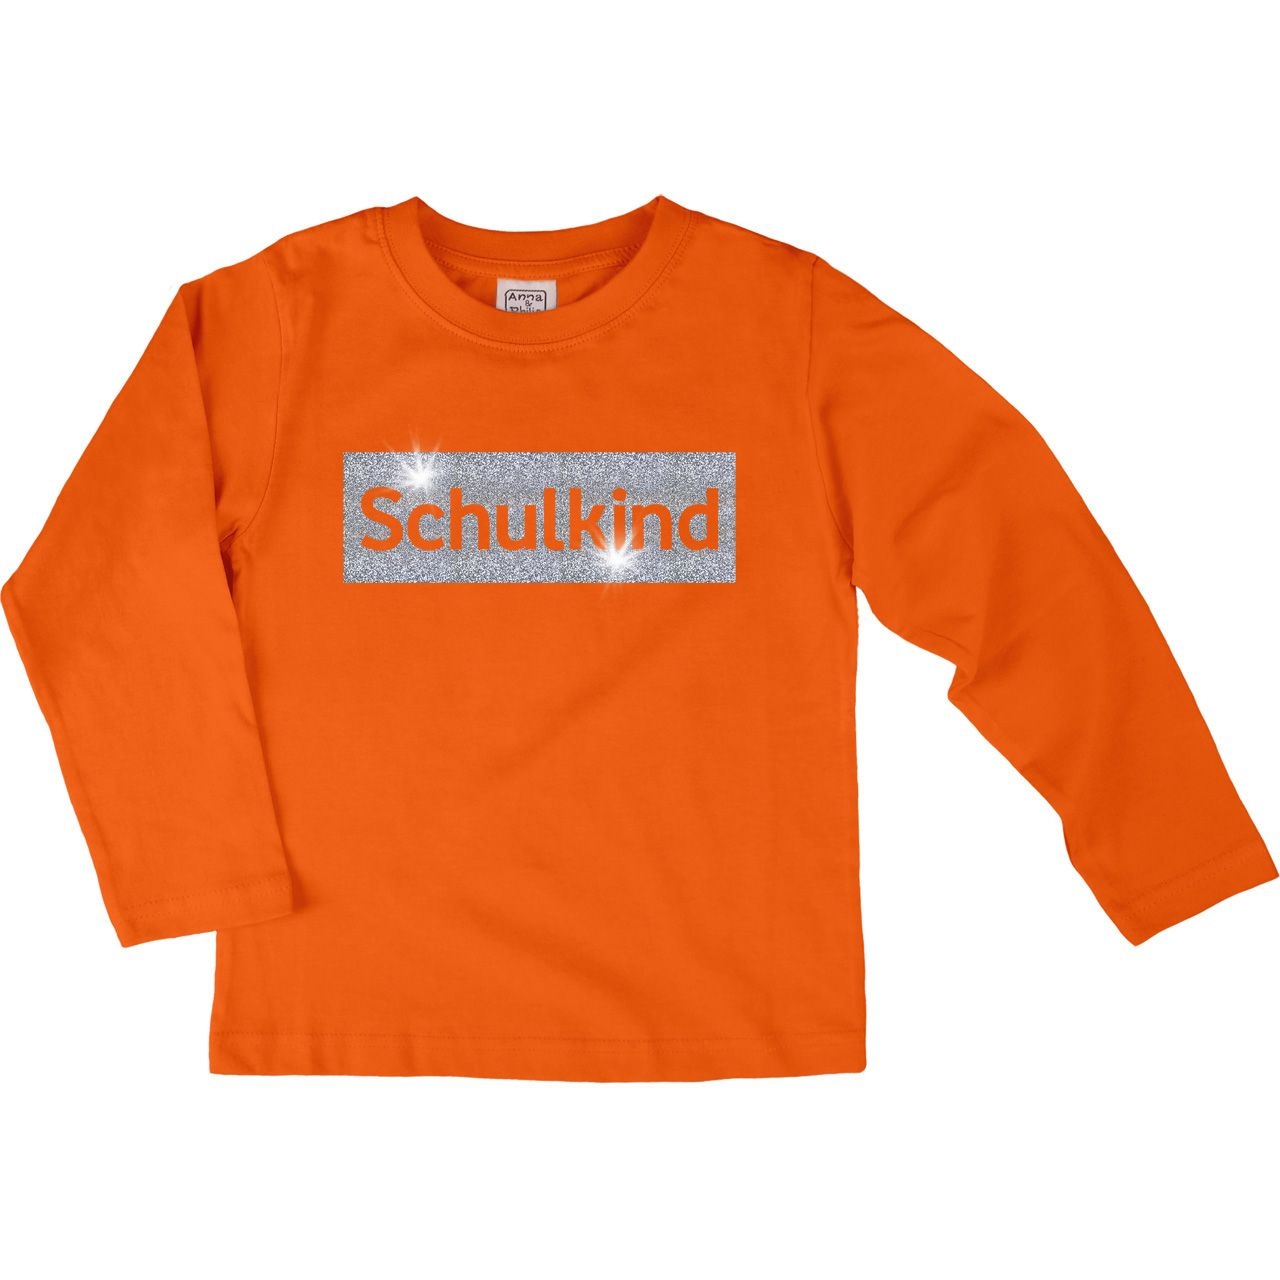 Schulkind Glitzer Kinder Langarm Shirt orange 122 / 128